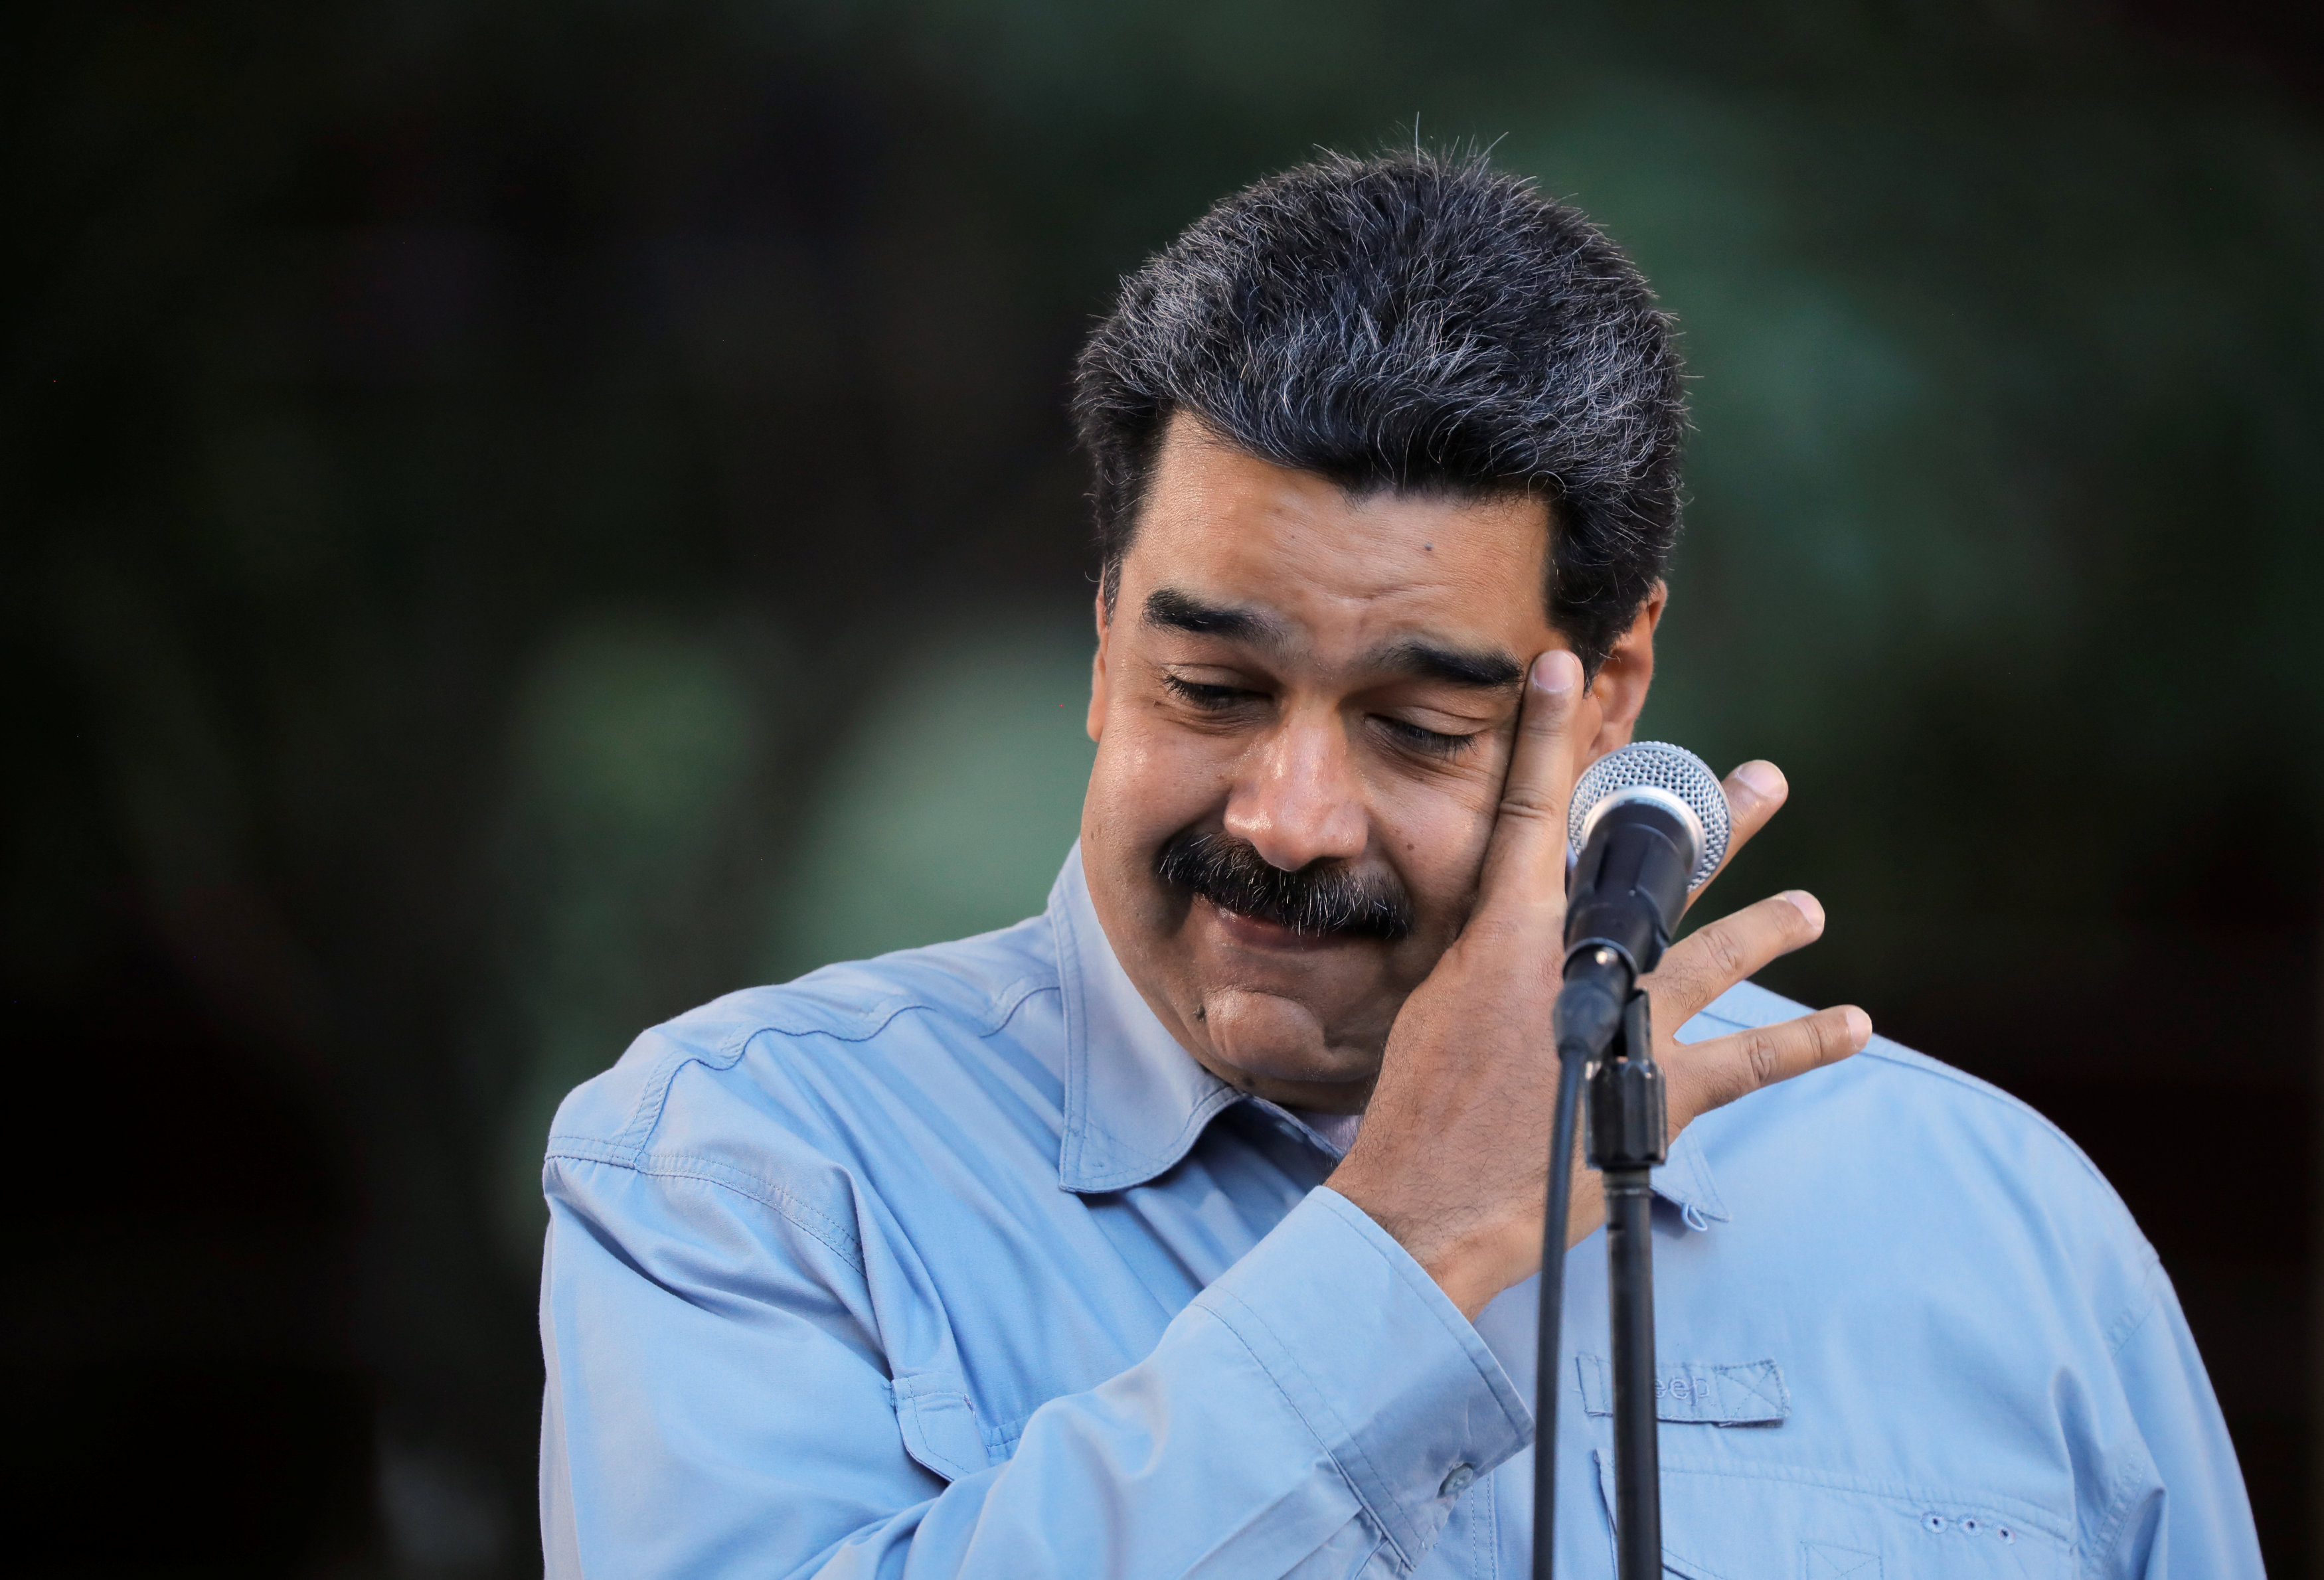 EN VIDEO: A esta venezolana le ofrecieron firmar por Maduro, pero plasmó el sentimiento nacional… y algo más